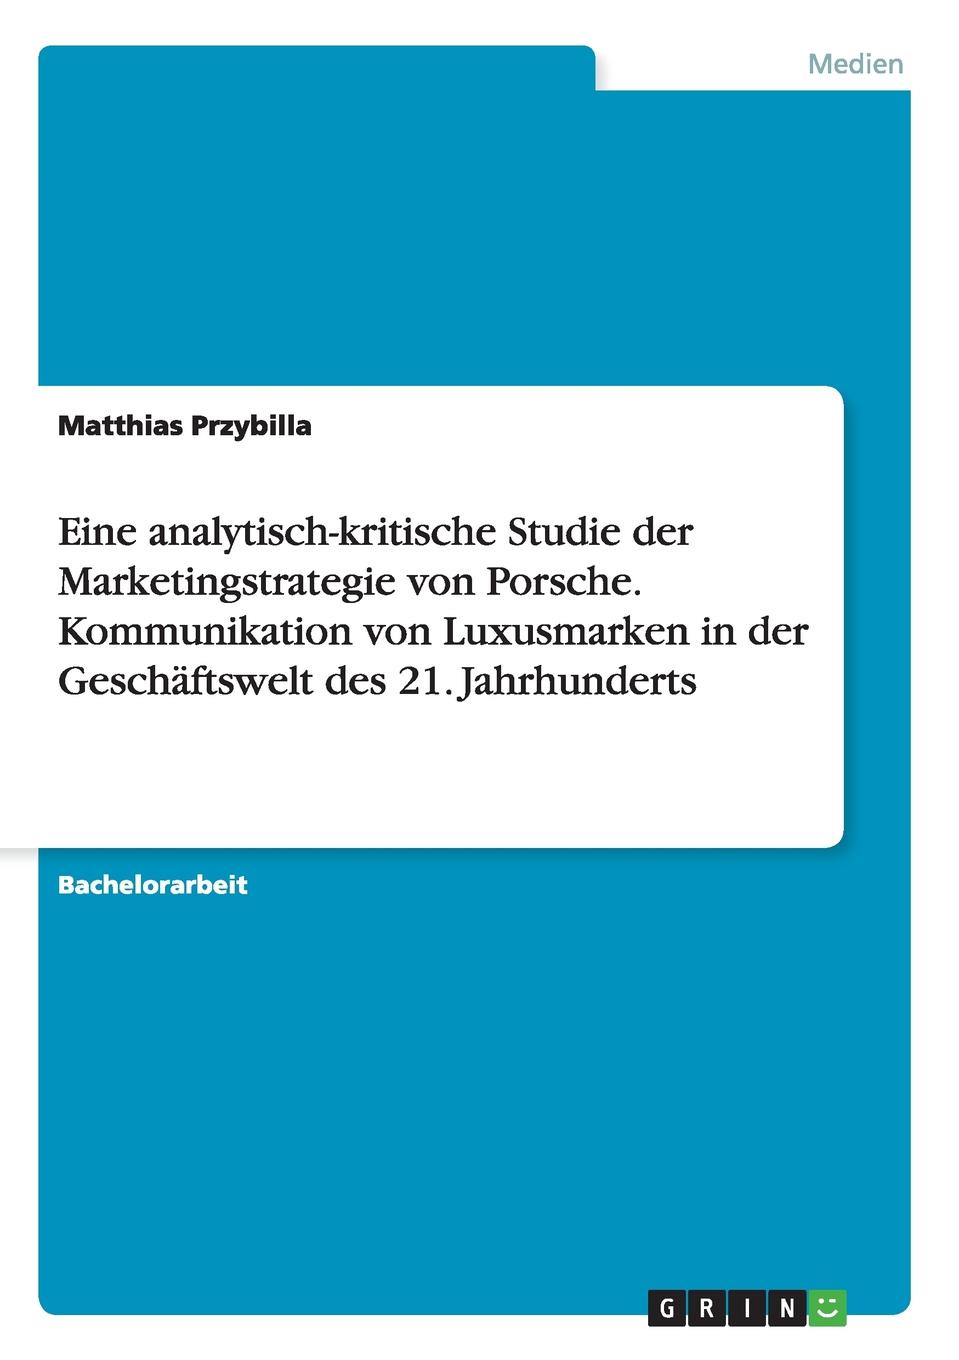 Eine analytisch-kritische Studie der Marketingstrategie von Porsche. Kommunikation von Luxusmarken in der Geschaftswelt des 21. Jahrhunderts